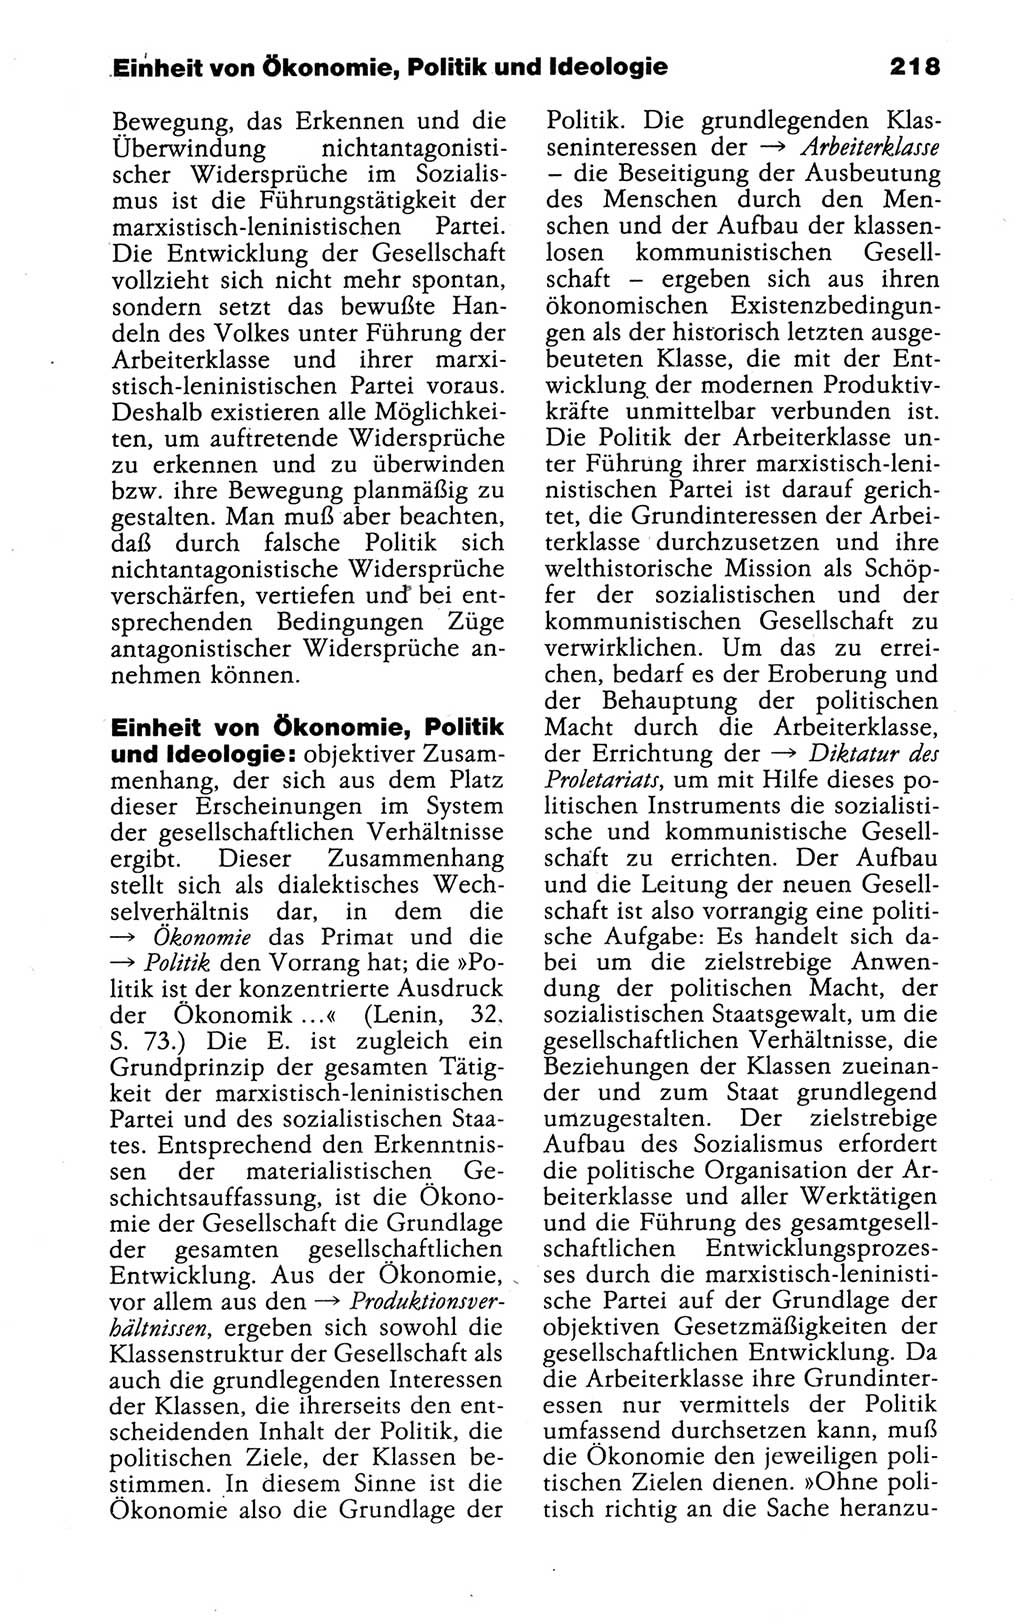 Kleines politisches Wörterbuch [Deutsche Demokratische Republik (DDR)] 1988, Seite 218 (Kl. pol. Wb. DDR 1988, S. 218)